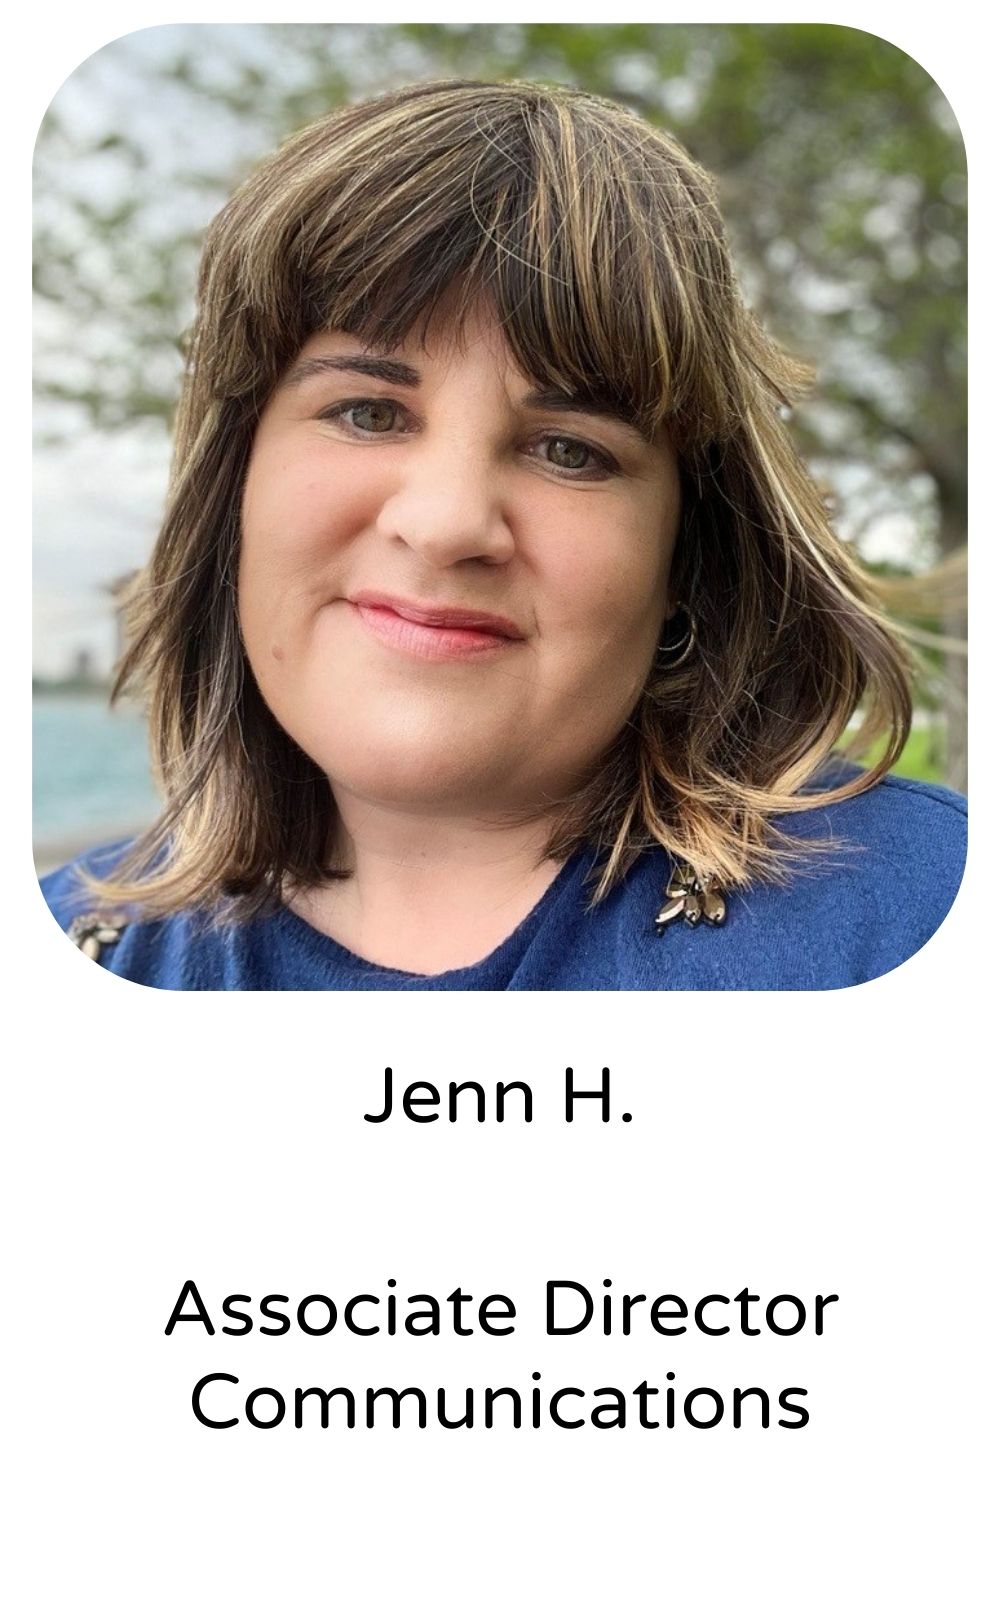 Jenn H, Associate Director, Communications